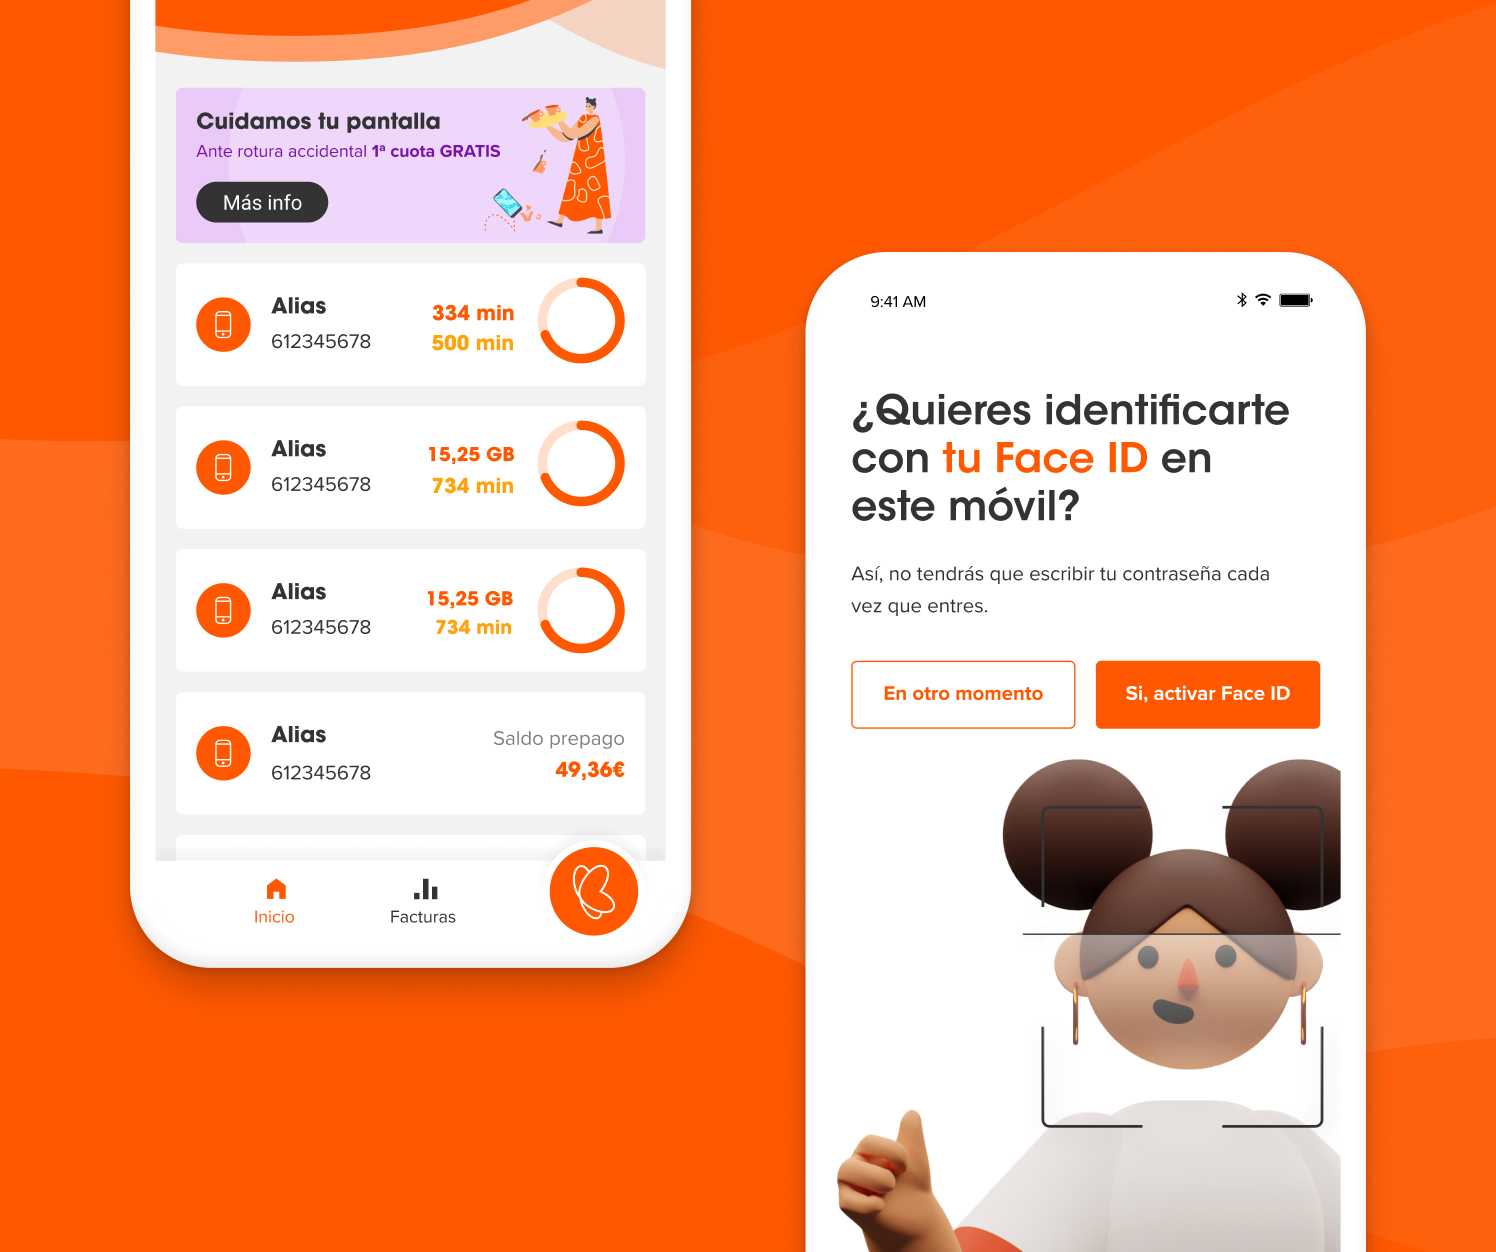 Euskaltel app face Id